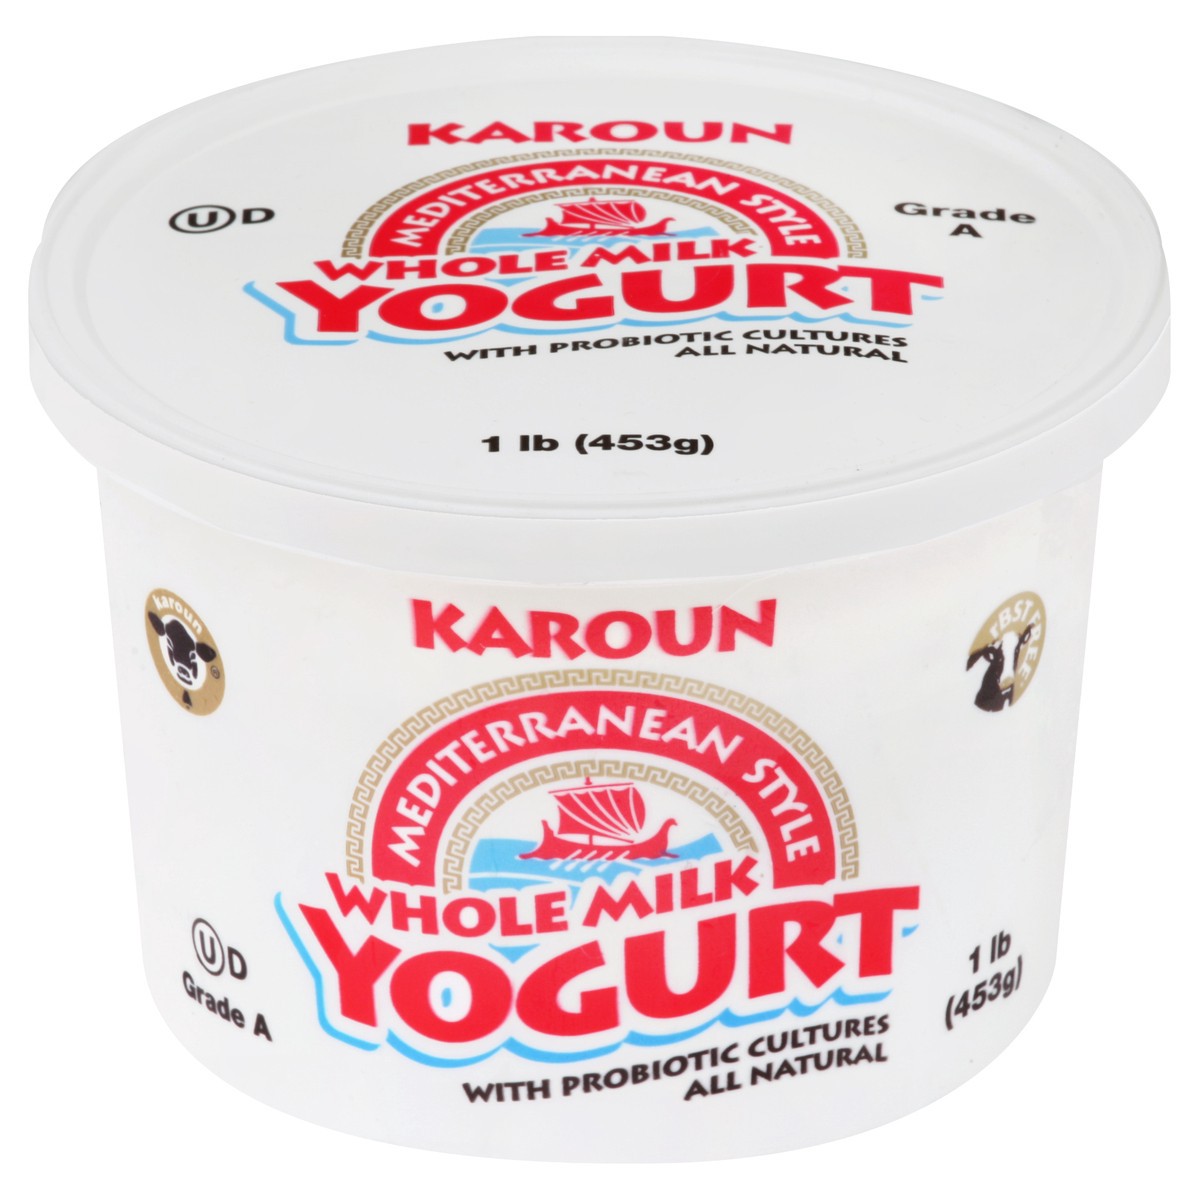 slide 3 of 3, Karoun Yogurt 1 lb, 1 lb